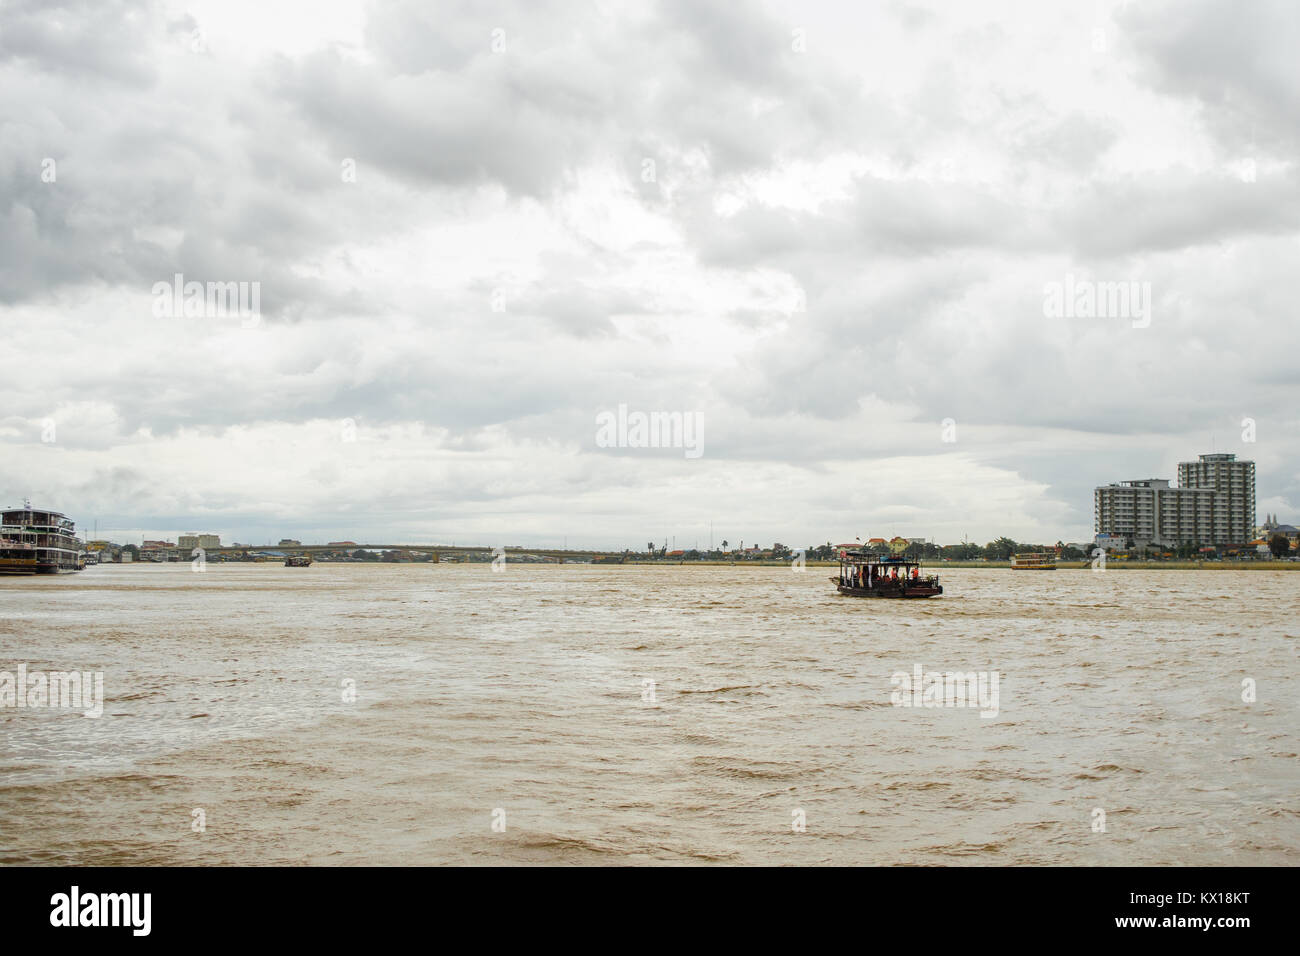 Traversée de la rivière Tonle Sap par bateau à Phnom Penh Cambodge, avec ciel nuageux ciel de pluie pendant la mousson, le Japon Cambodge Pont de l'amitié à distance Banque D'Images